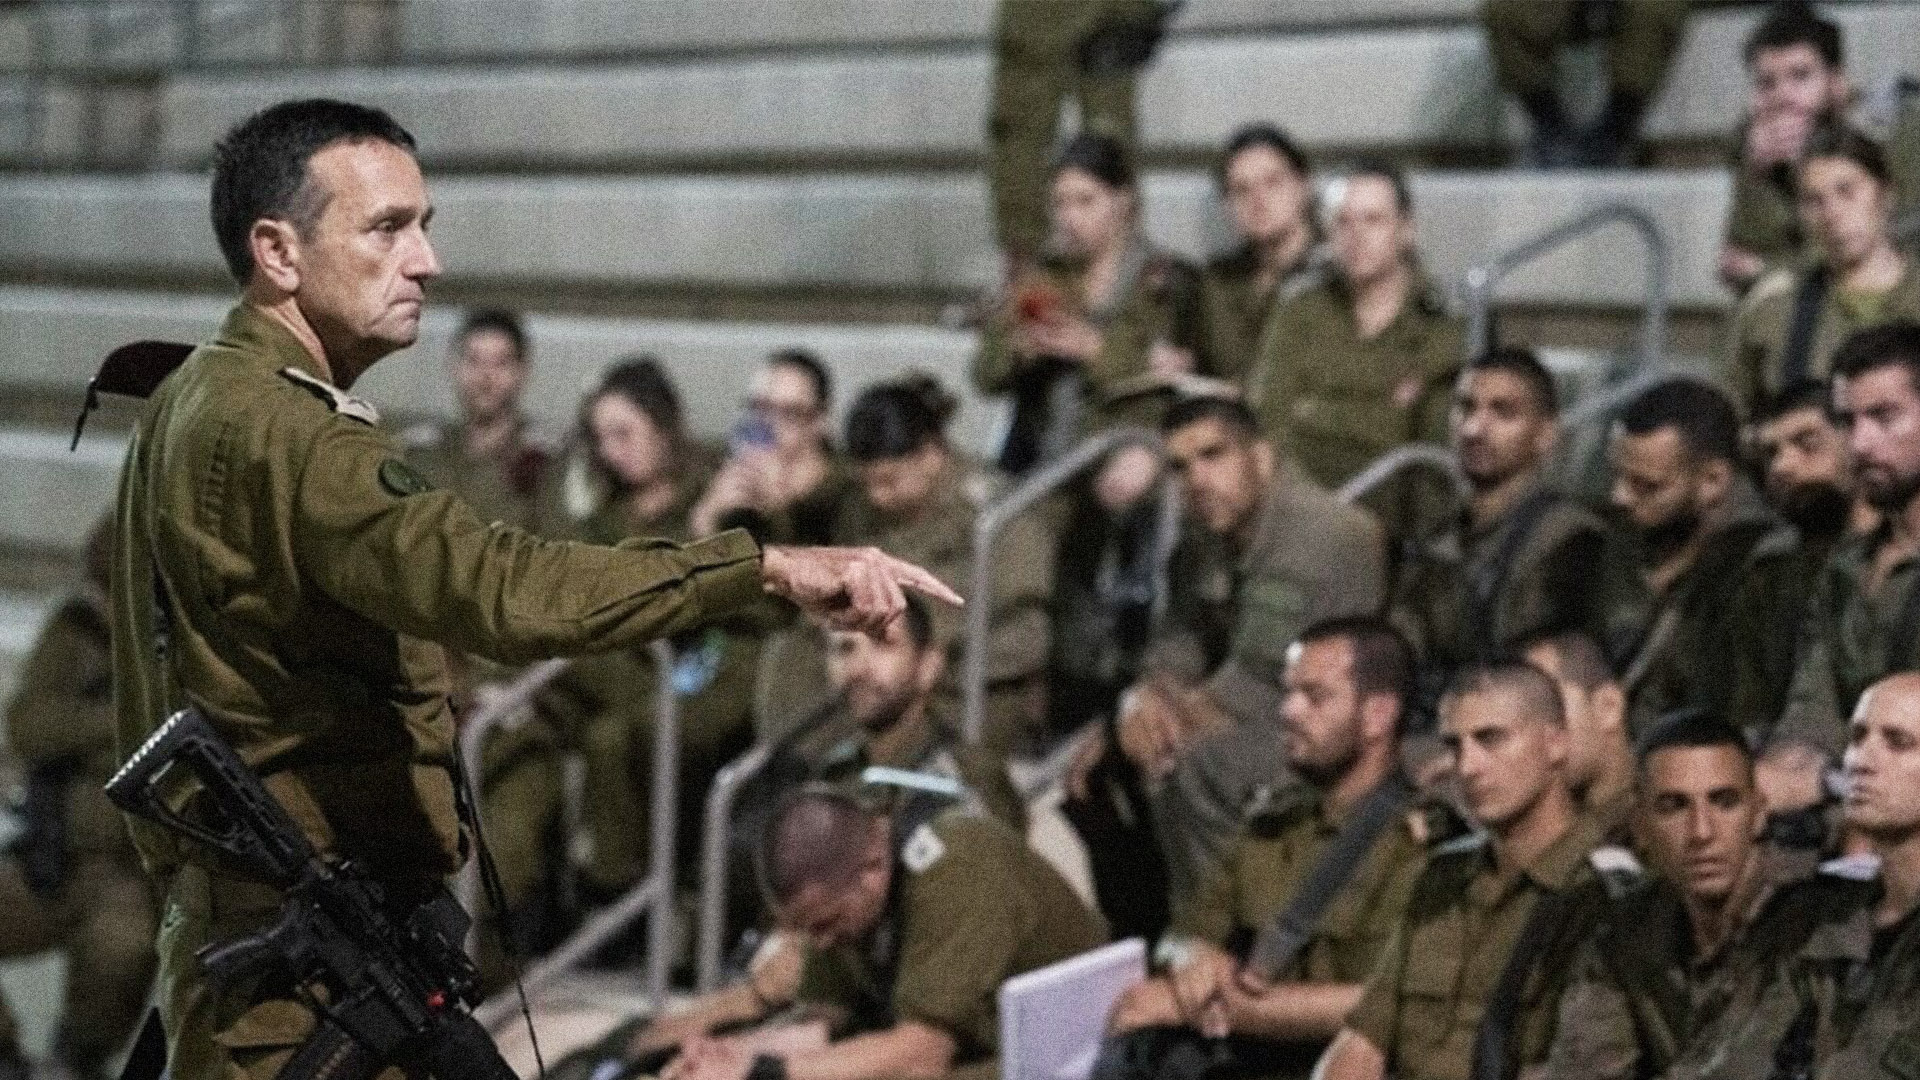 صورة الجيش الإسرائيلي يحرر مزيدًا من الأسرى في عملية نوعية أوقف خلالها القصف وجلس بأدب